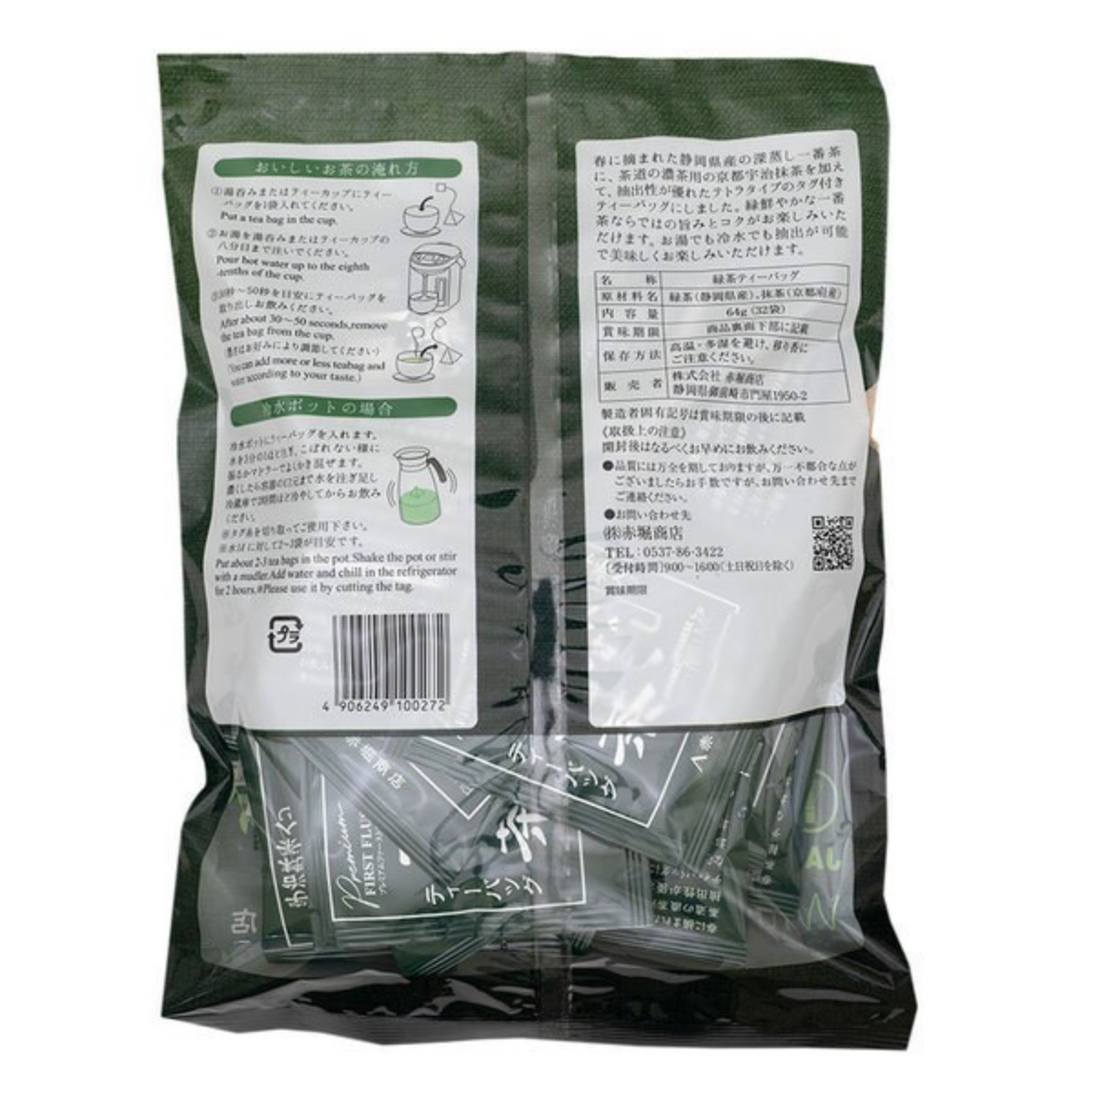 Akahori Shoten Uji Matcha Fukamushi Ichibancha Tea Bags 2g x 32 bags